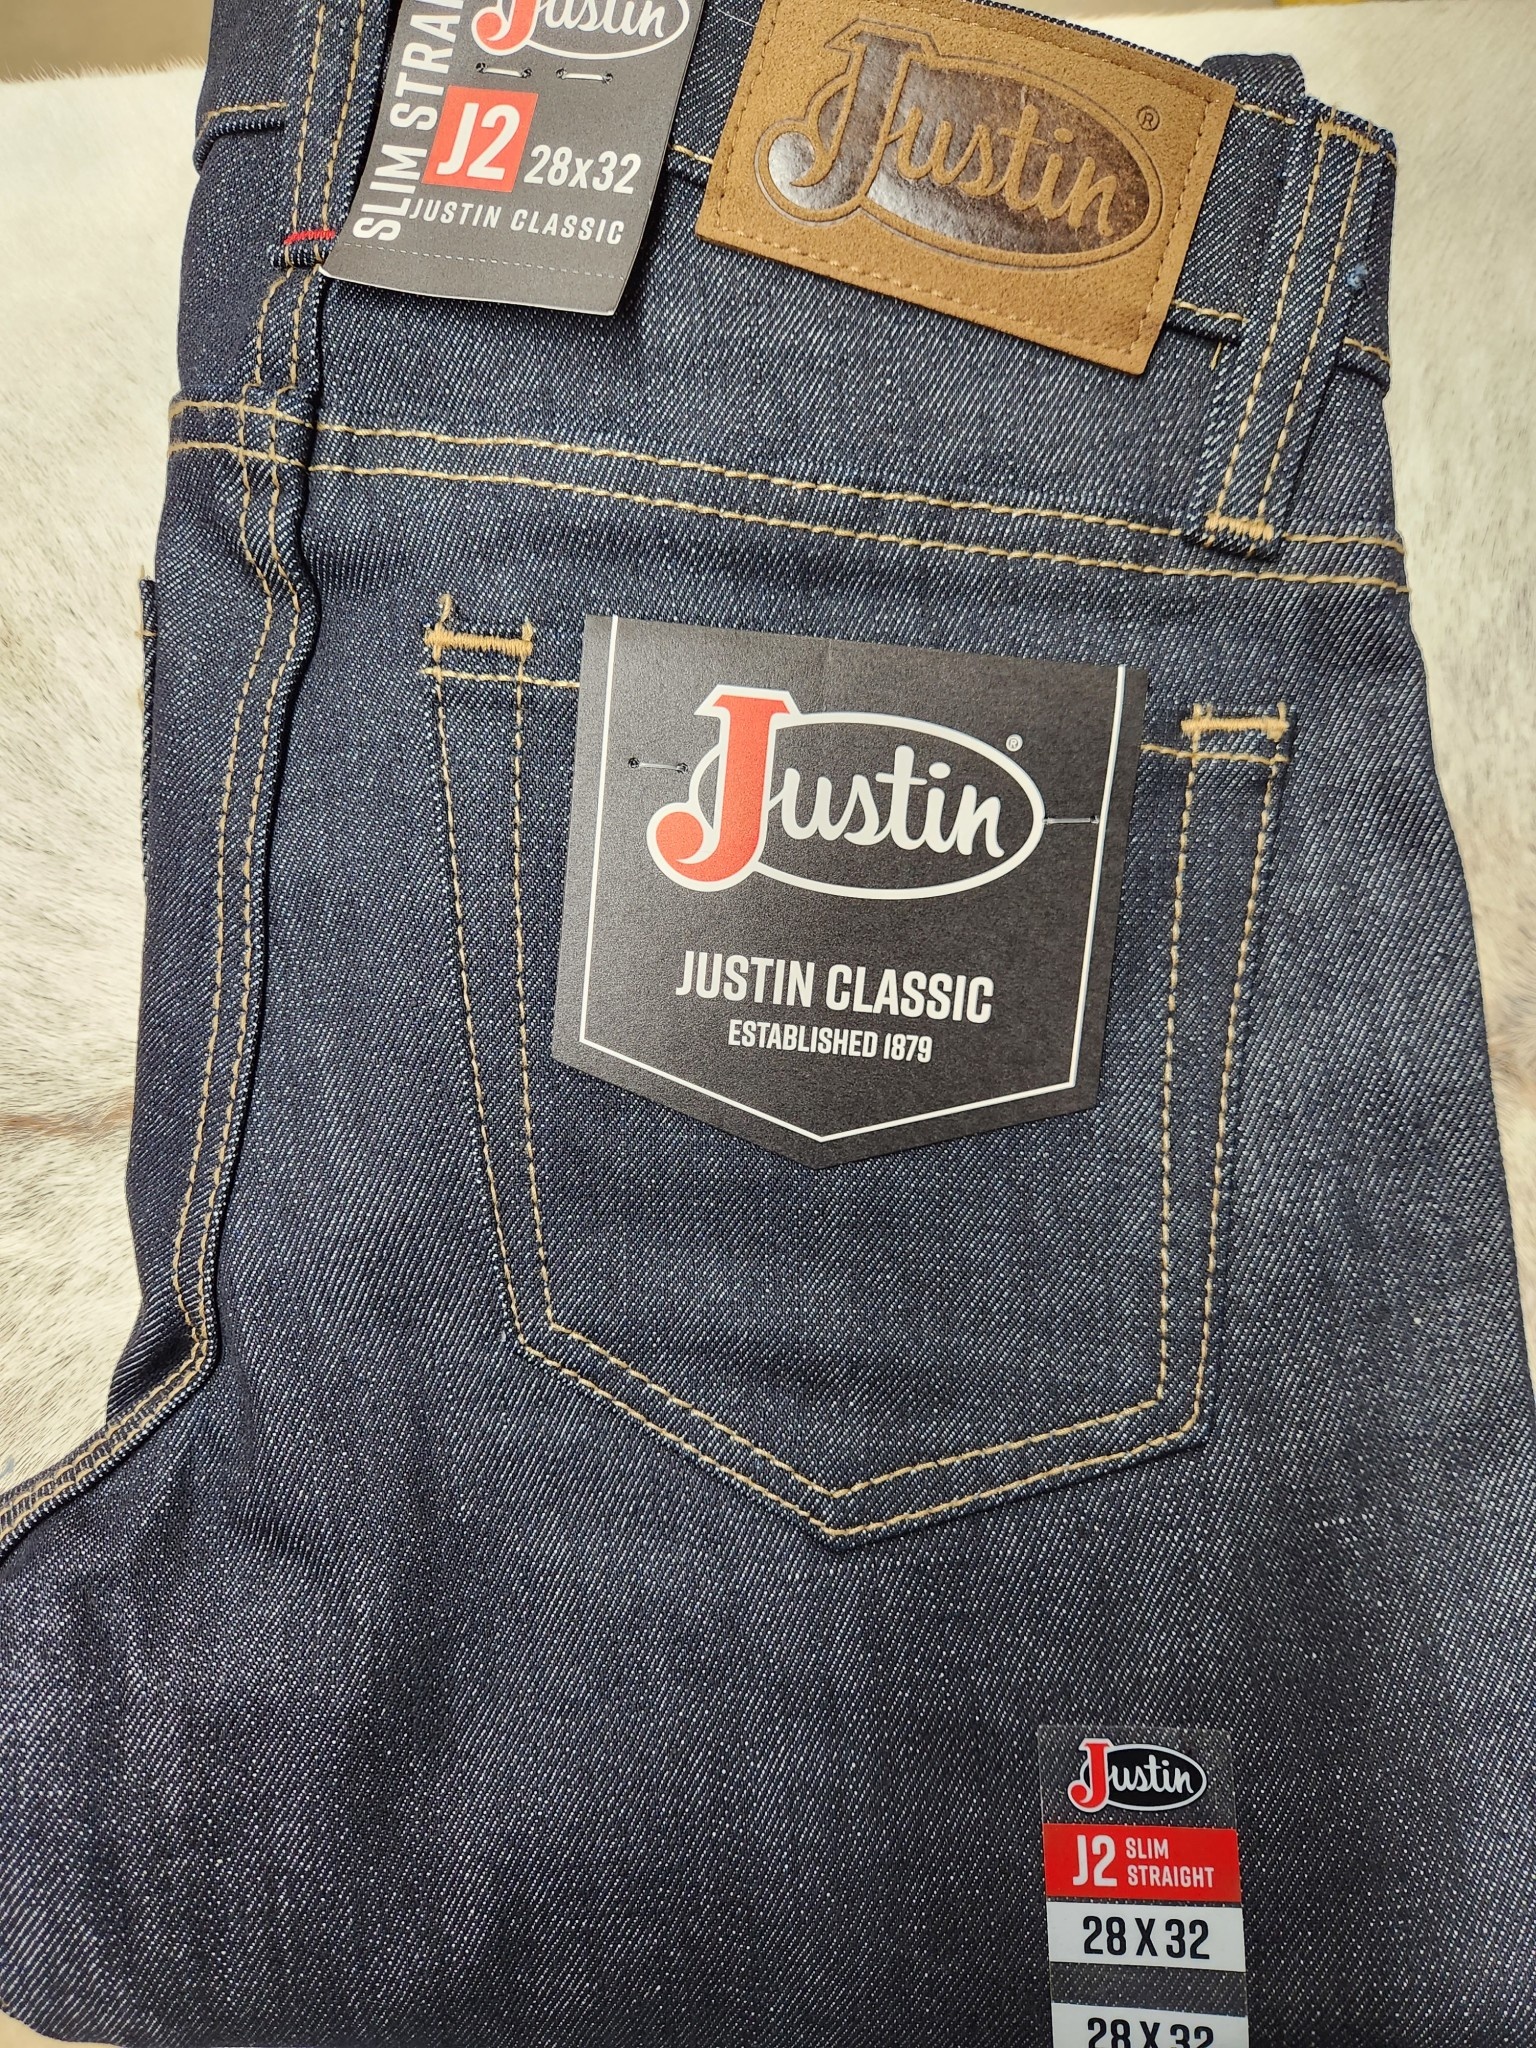 Justin JC-721551 JUSTIN MEN'S J2 CLASSIC SLIM STRAIGHT UNWASHED JEAN - A  Bit of Tack